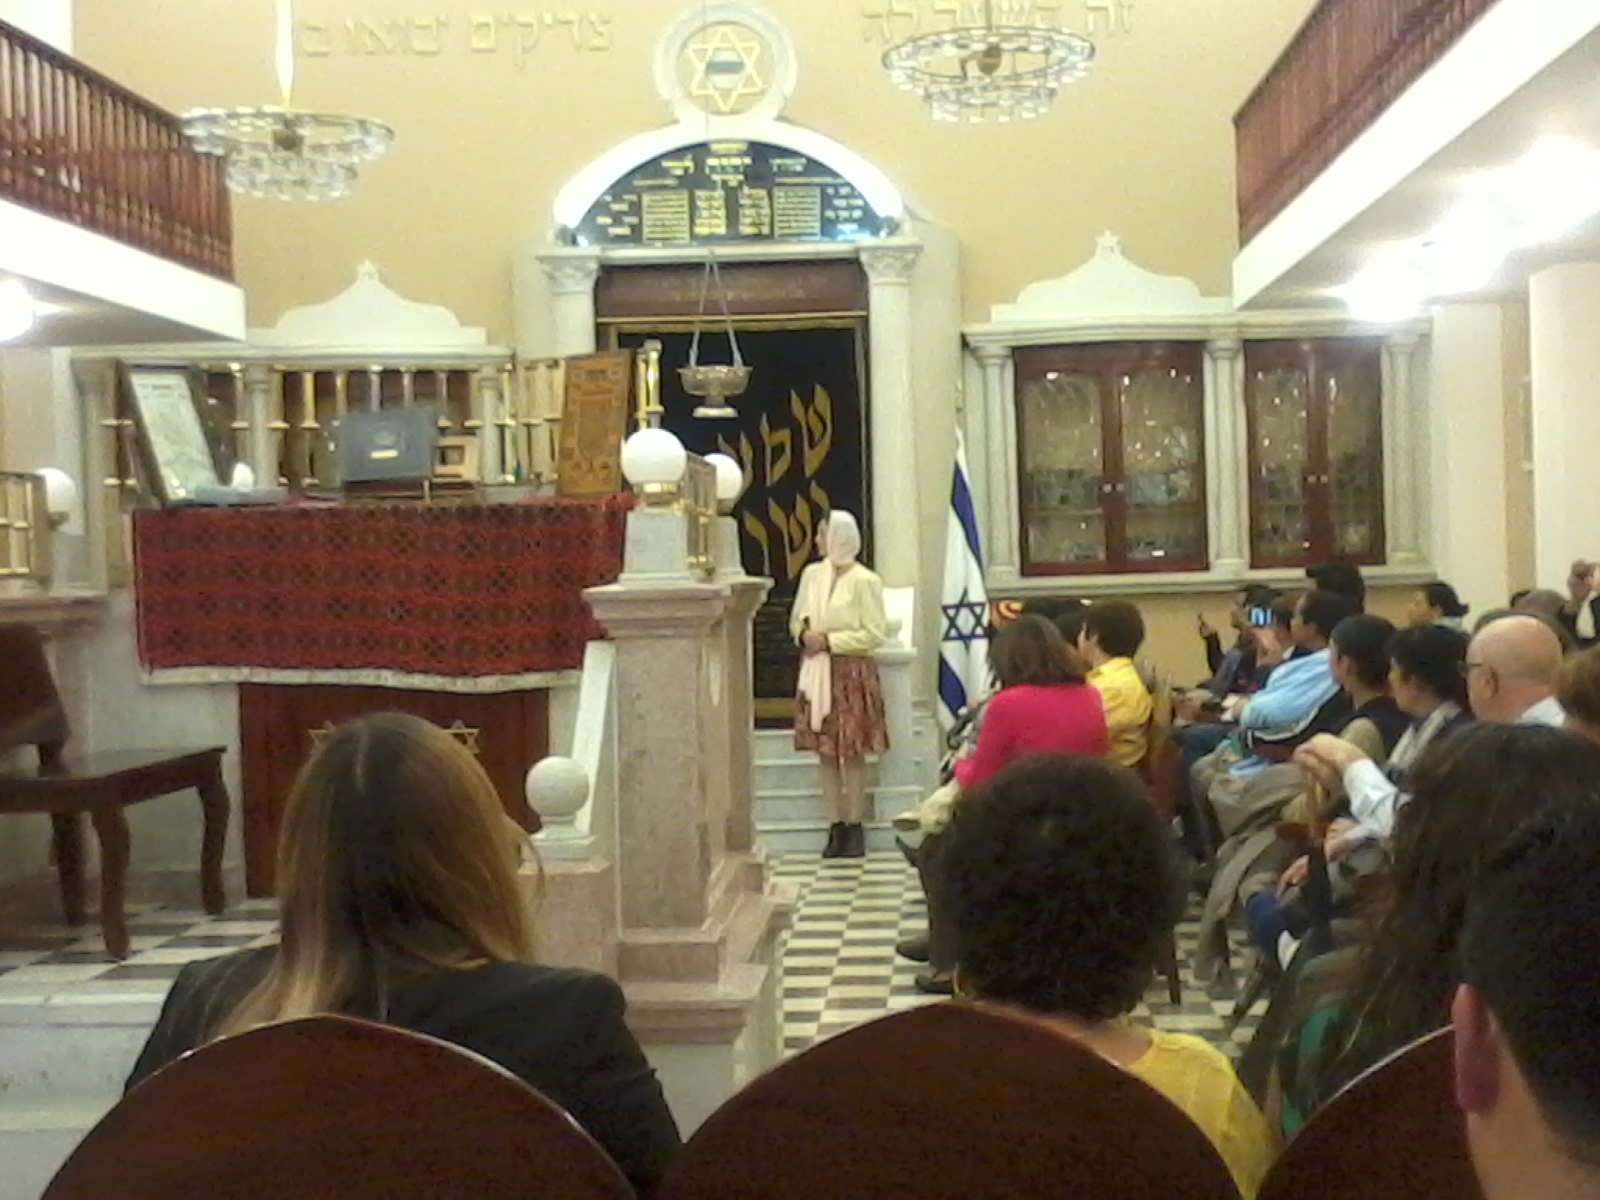 Virtual Tour of Sinagoga Justo Sierra